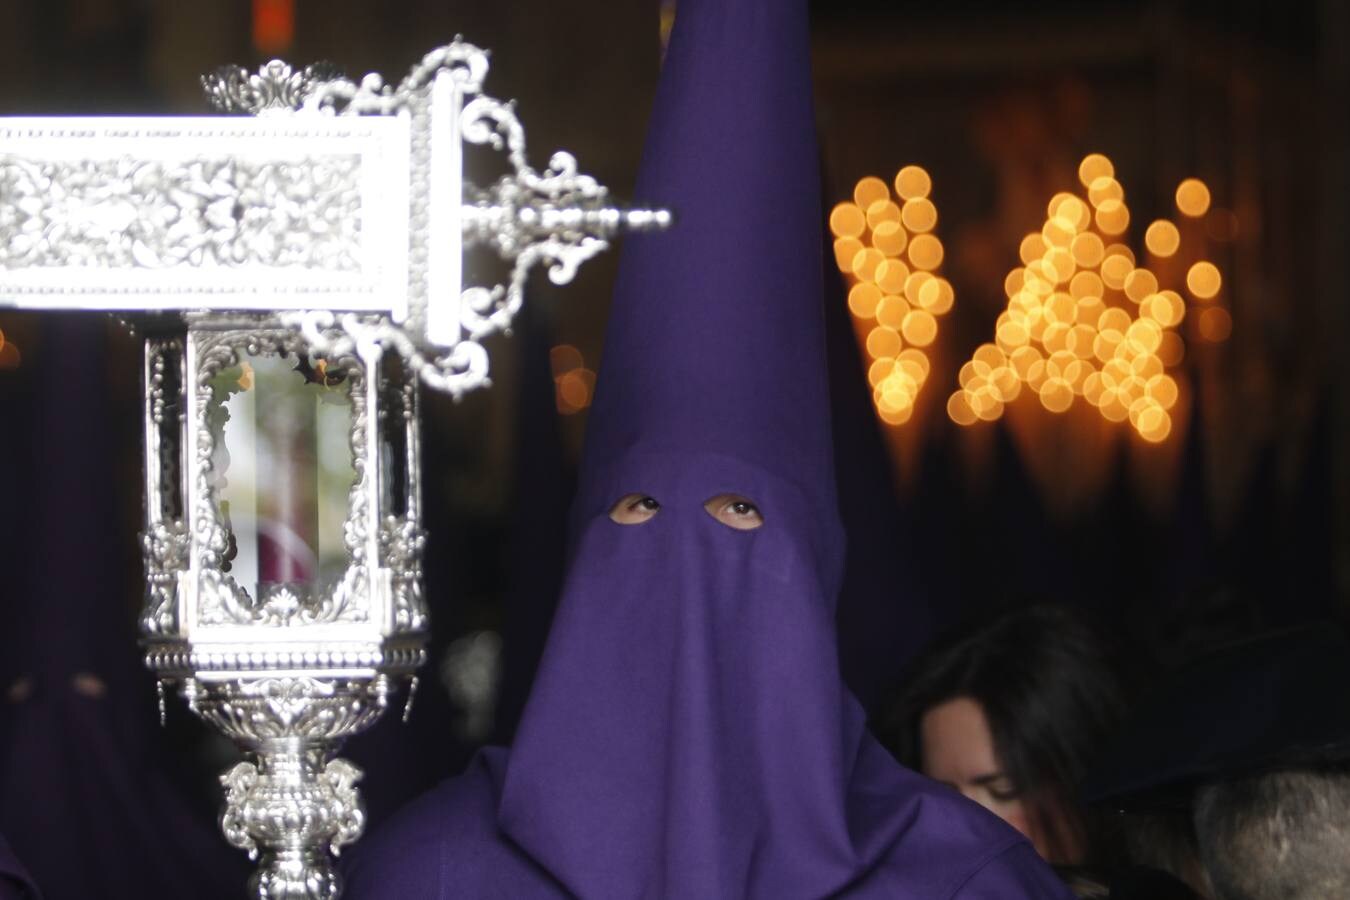 La procesión del Calvario de Córdoba, en imágenes